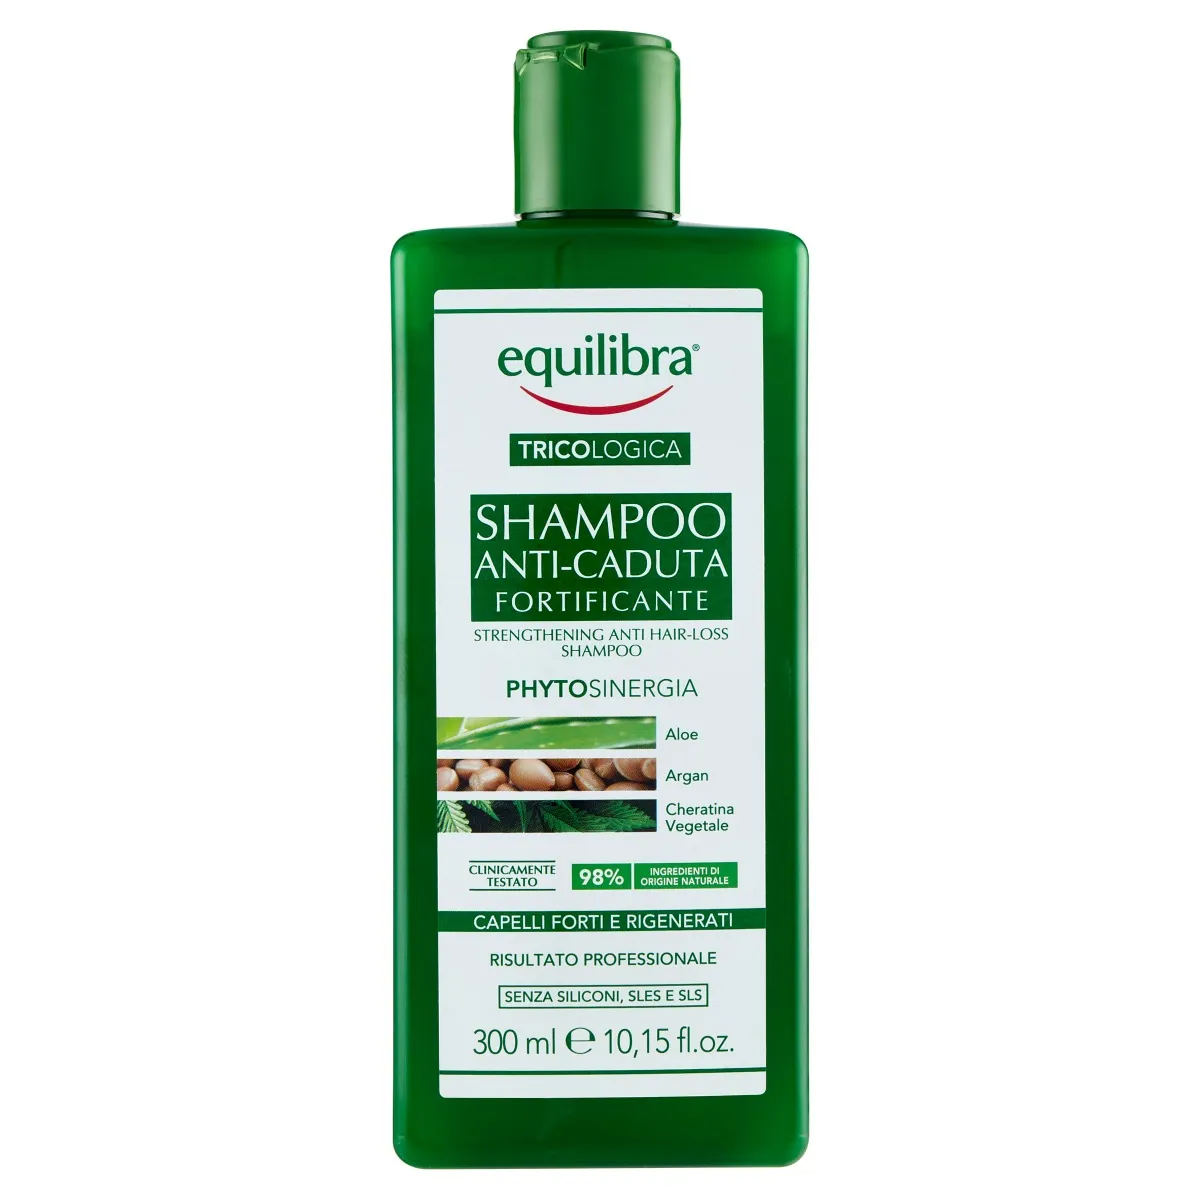 Equilibra Tricologica Shampoo Anti-Caduta Fortificante 300 ml Per capelli fragili